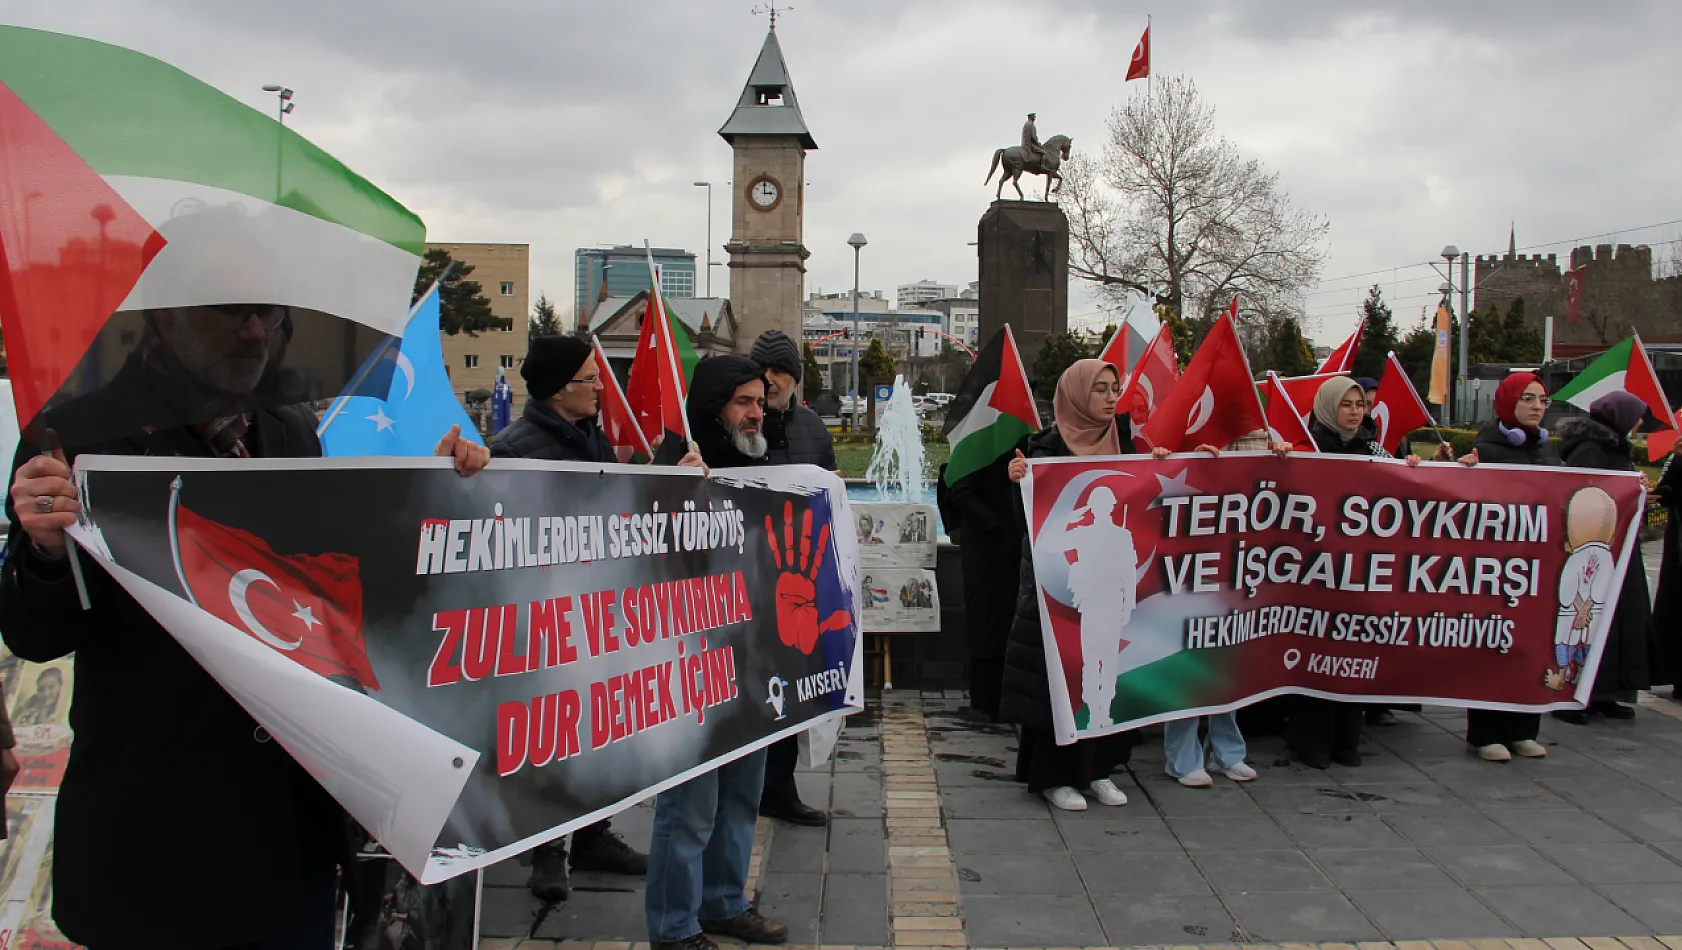 Filistin'e destek olmak için yürüdüler